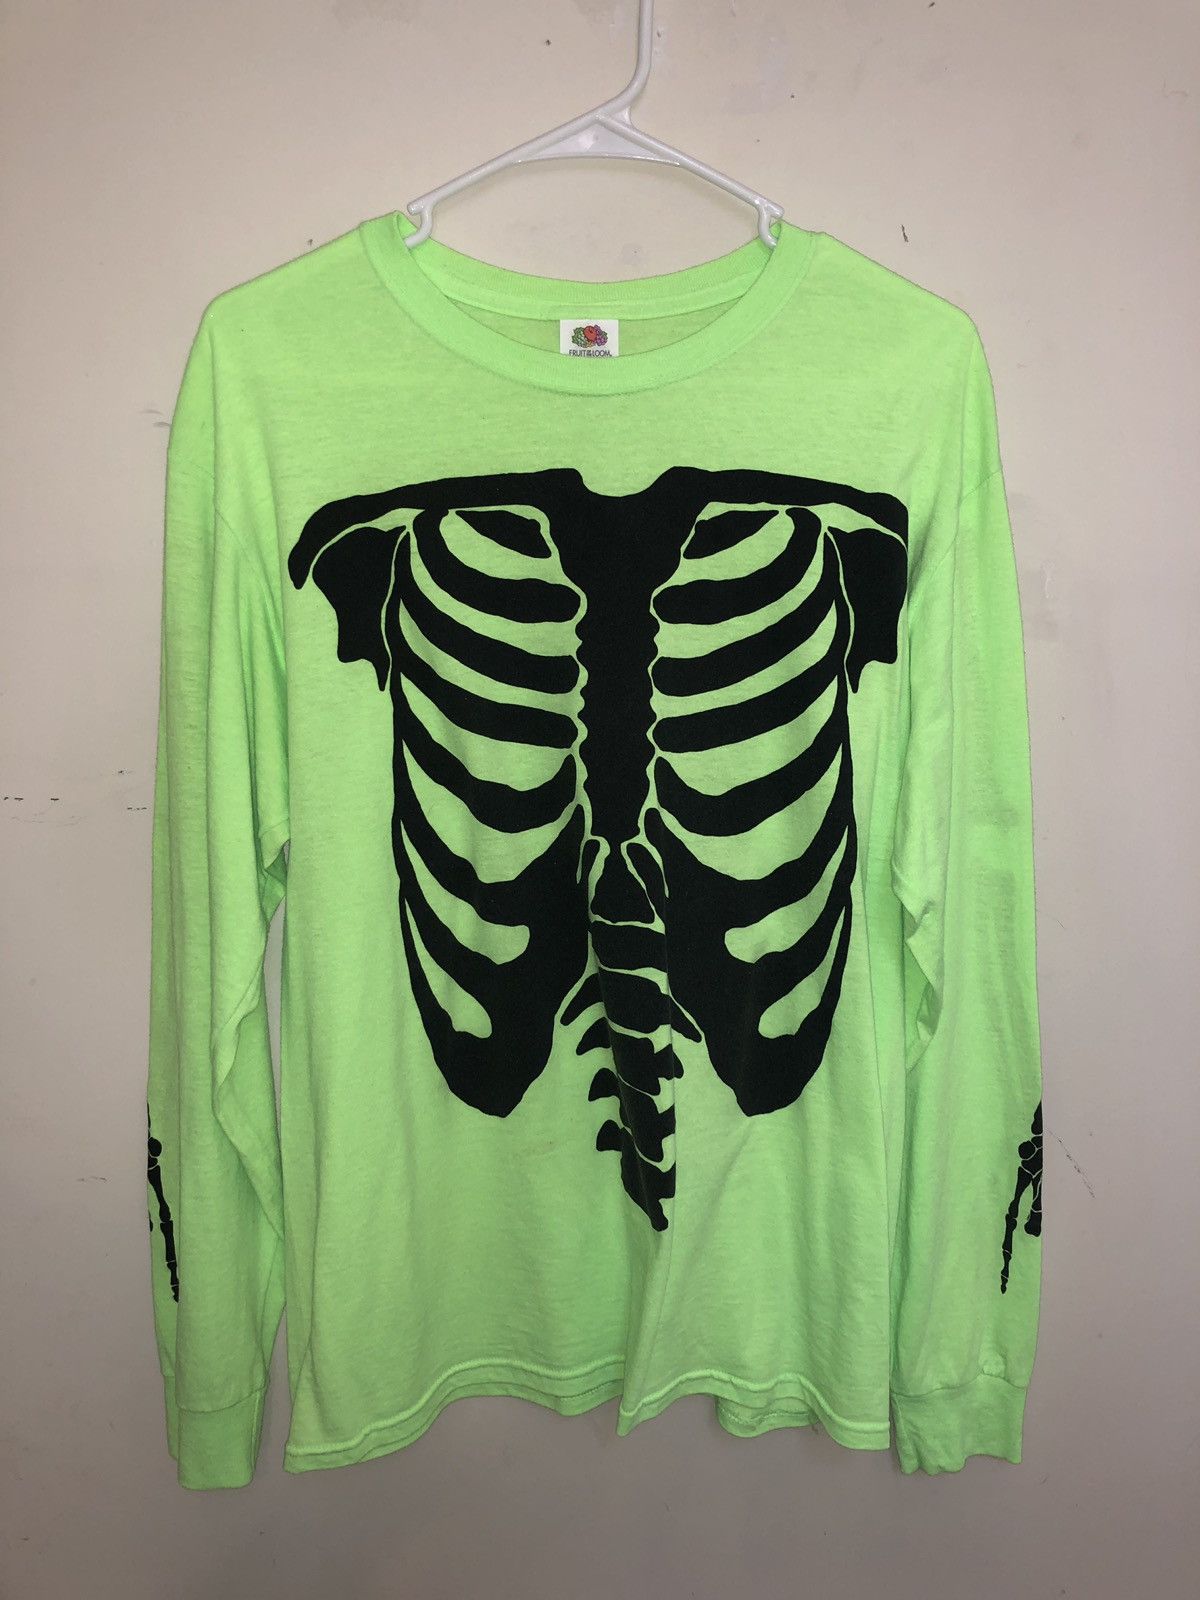 Vlone Playboi Carti Skeleton Die Lit Tour Shirt Size US M / EU 48-50 / 2 - 2 Preview